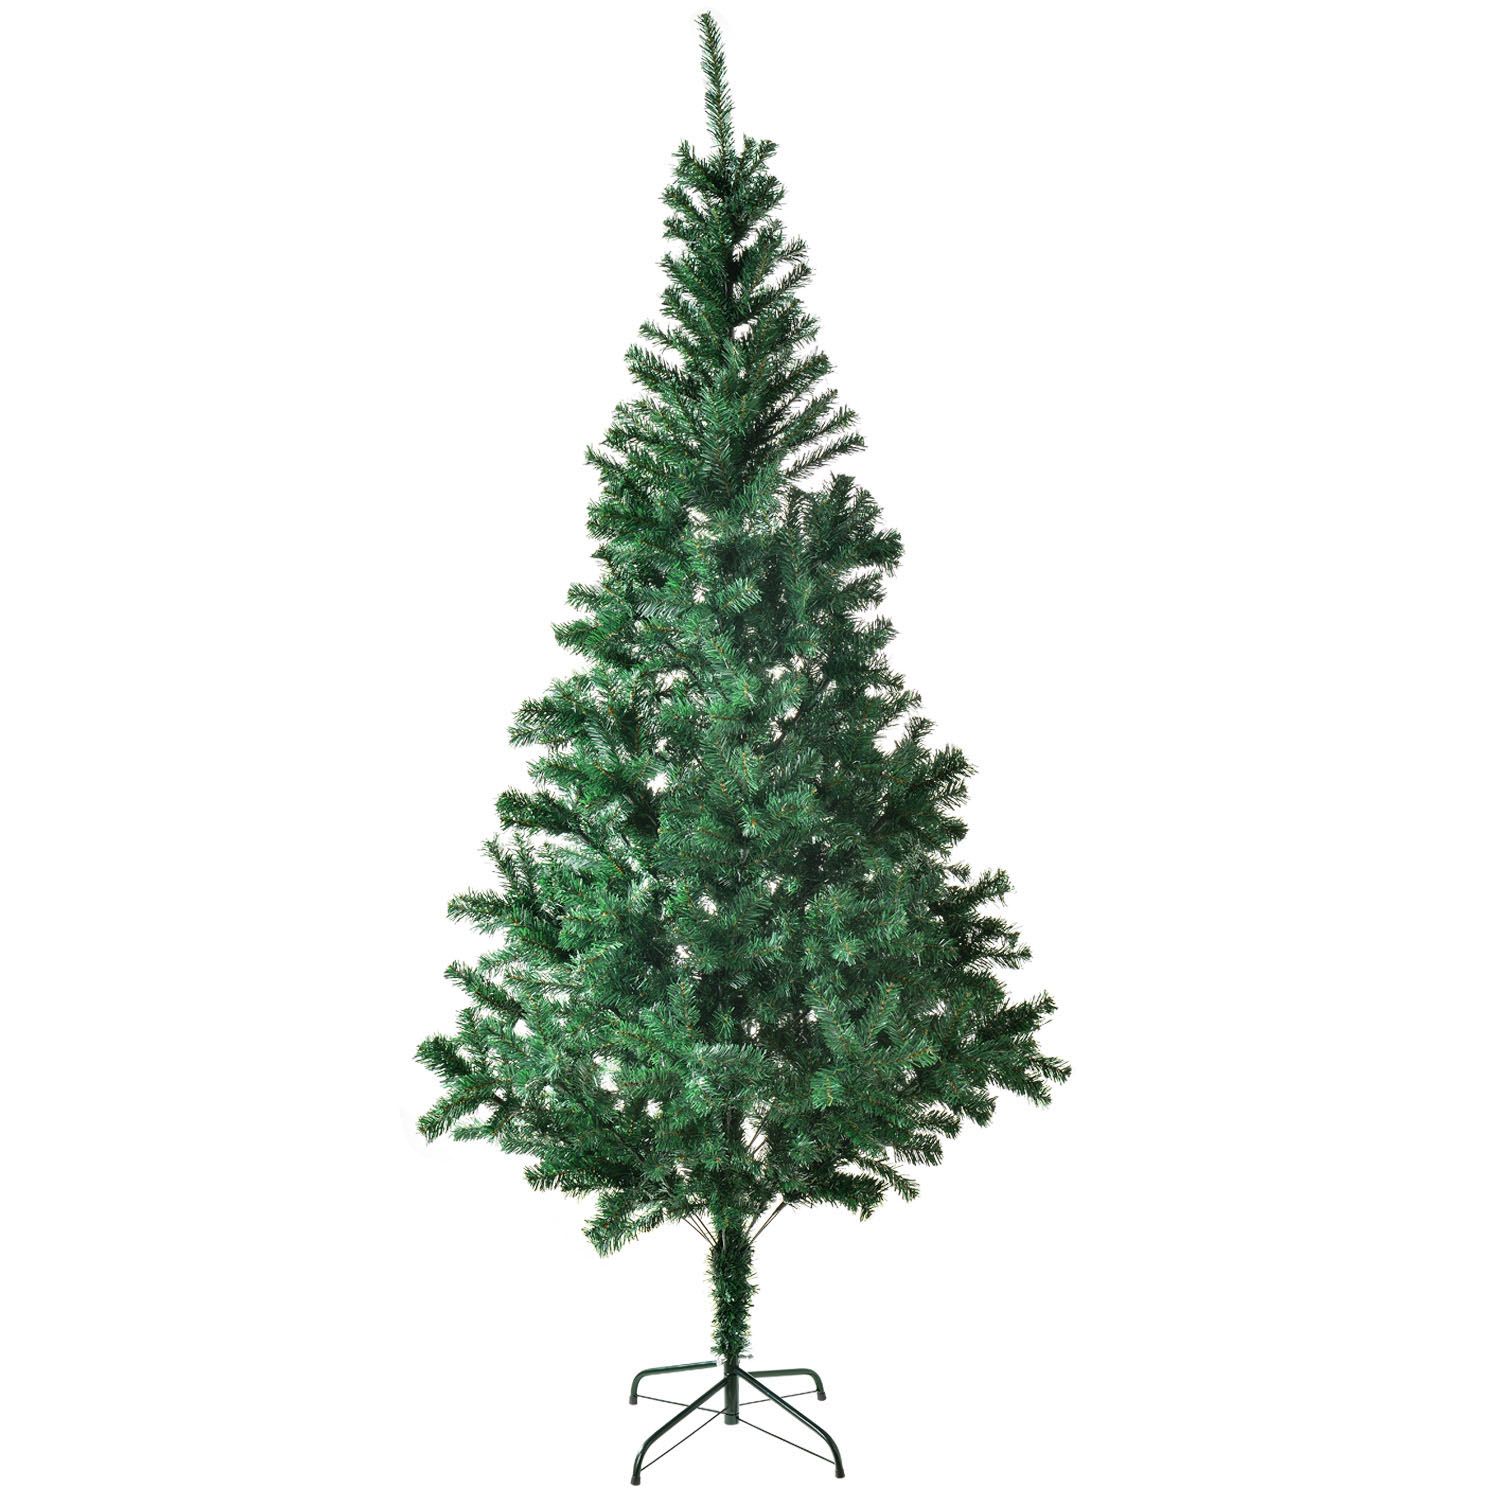 Juskys Umělý vánoční stromek - 180 cm, se stojanem, zelený